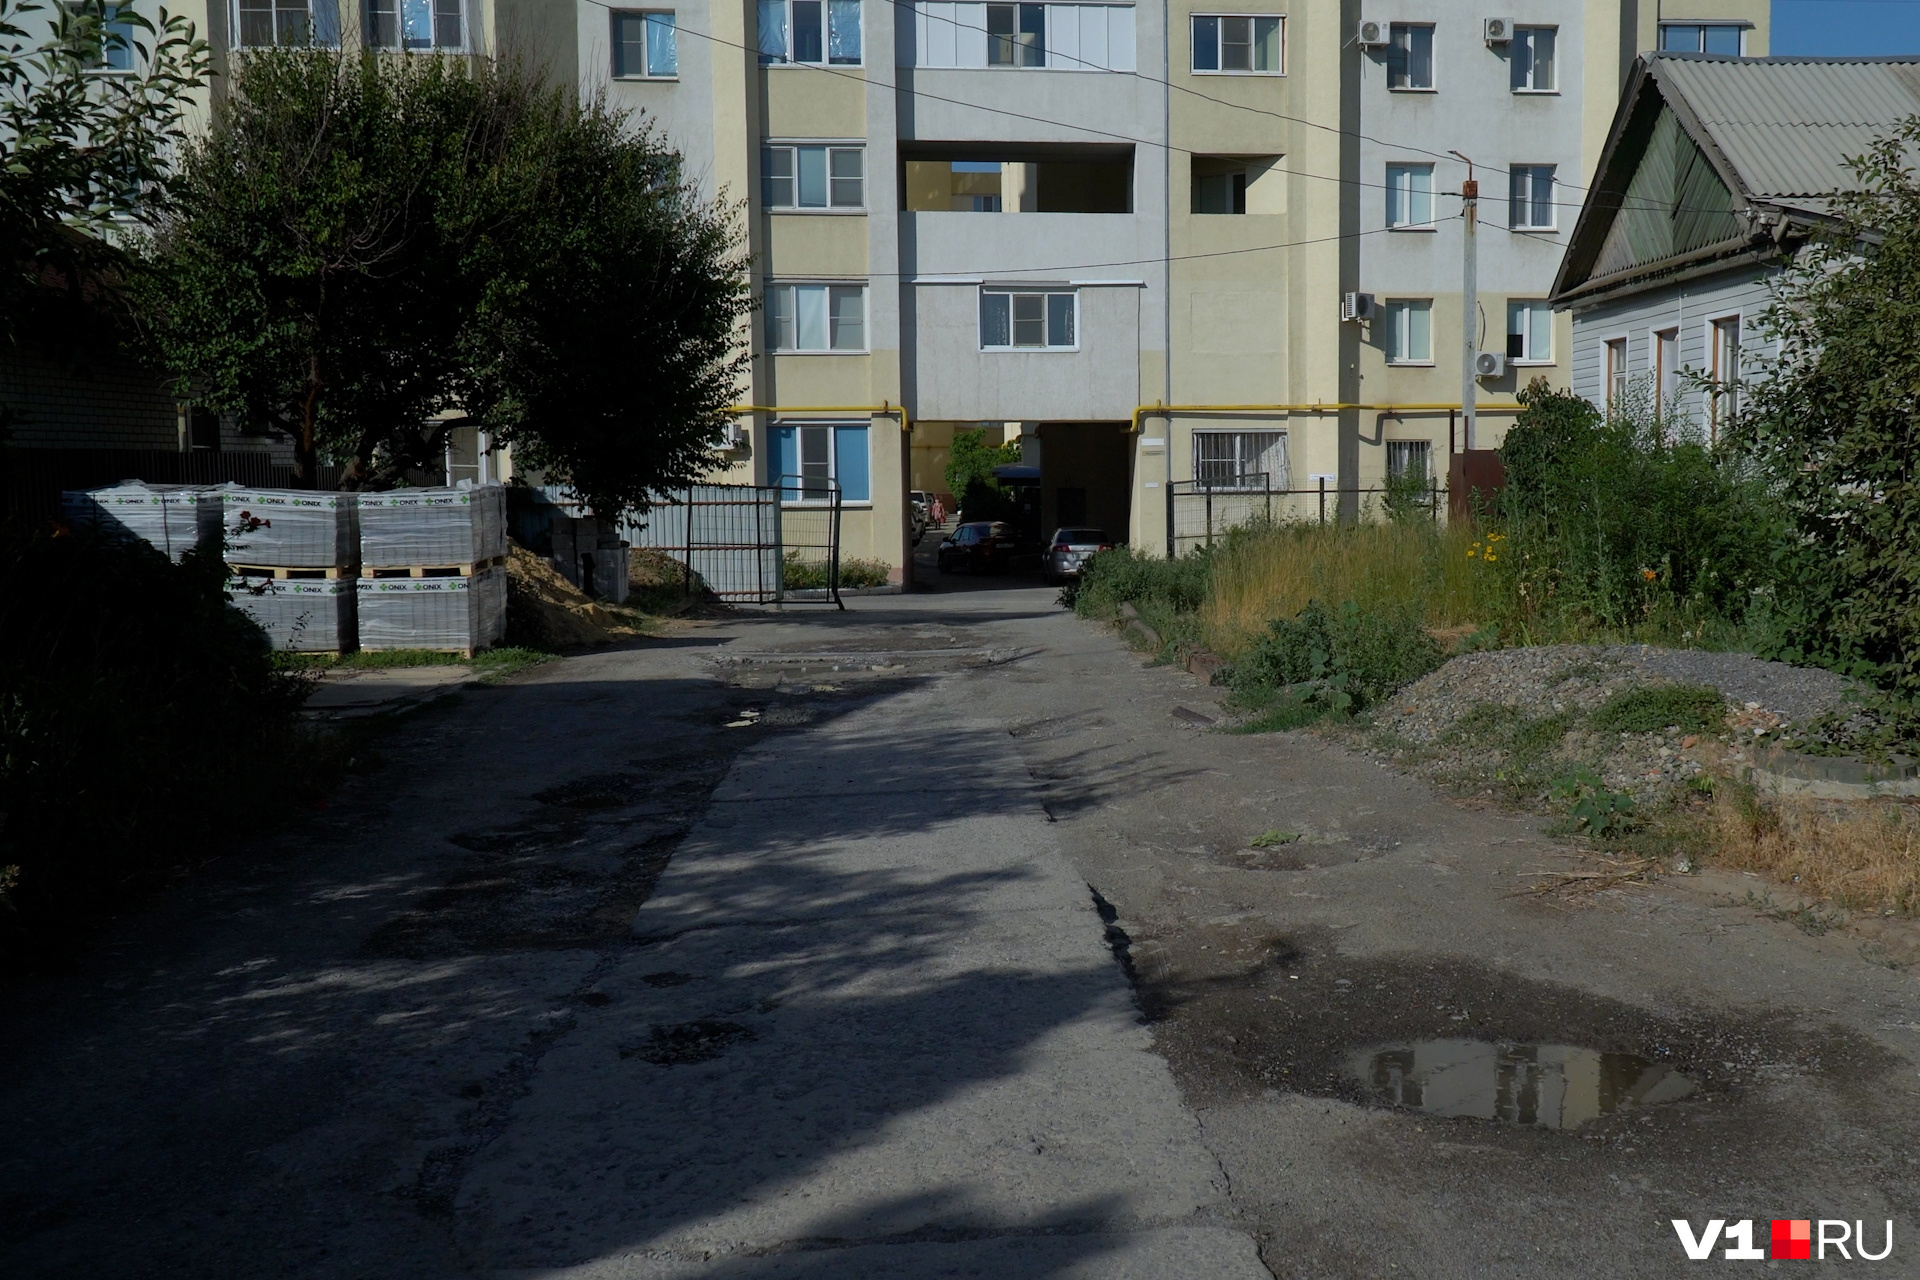 Так выглядит равнозначная улице Хользунова, по мнению инспектора, дорога к дому по Аэрофлотской